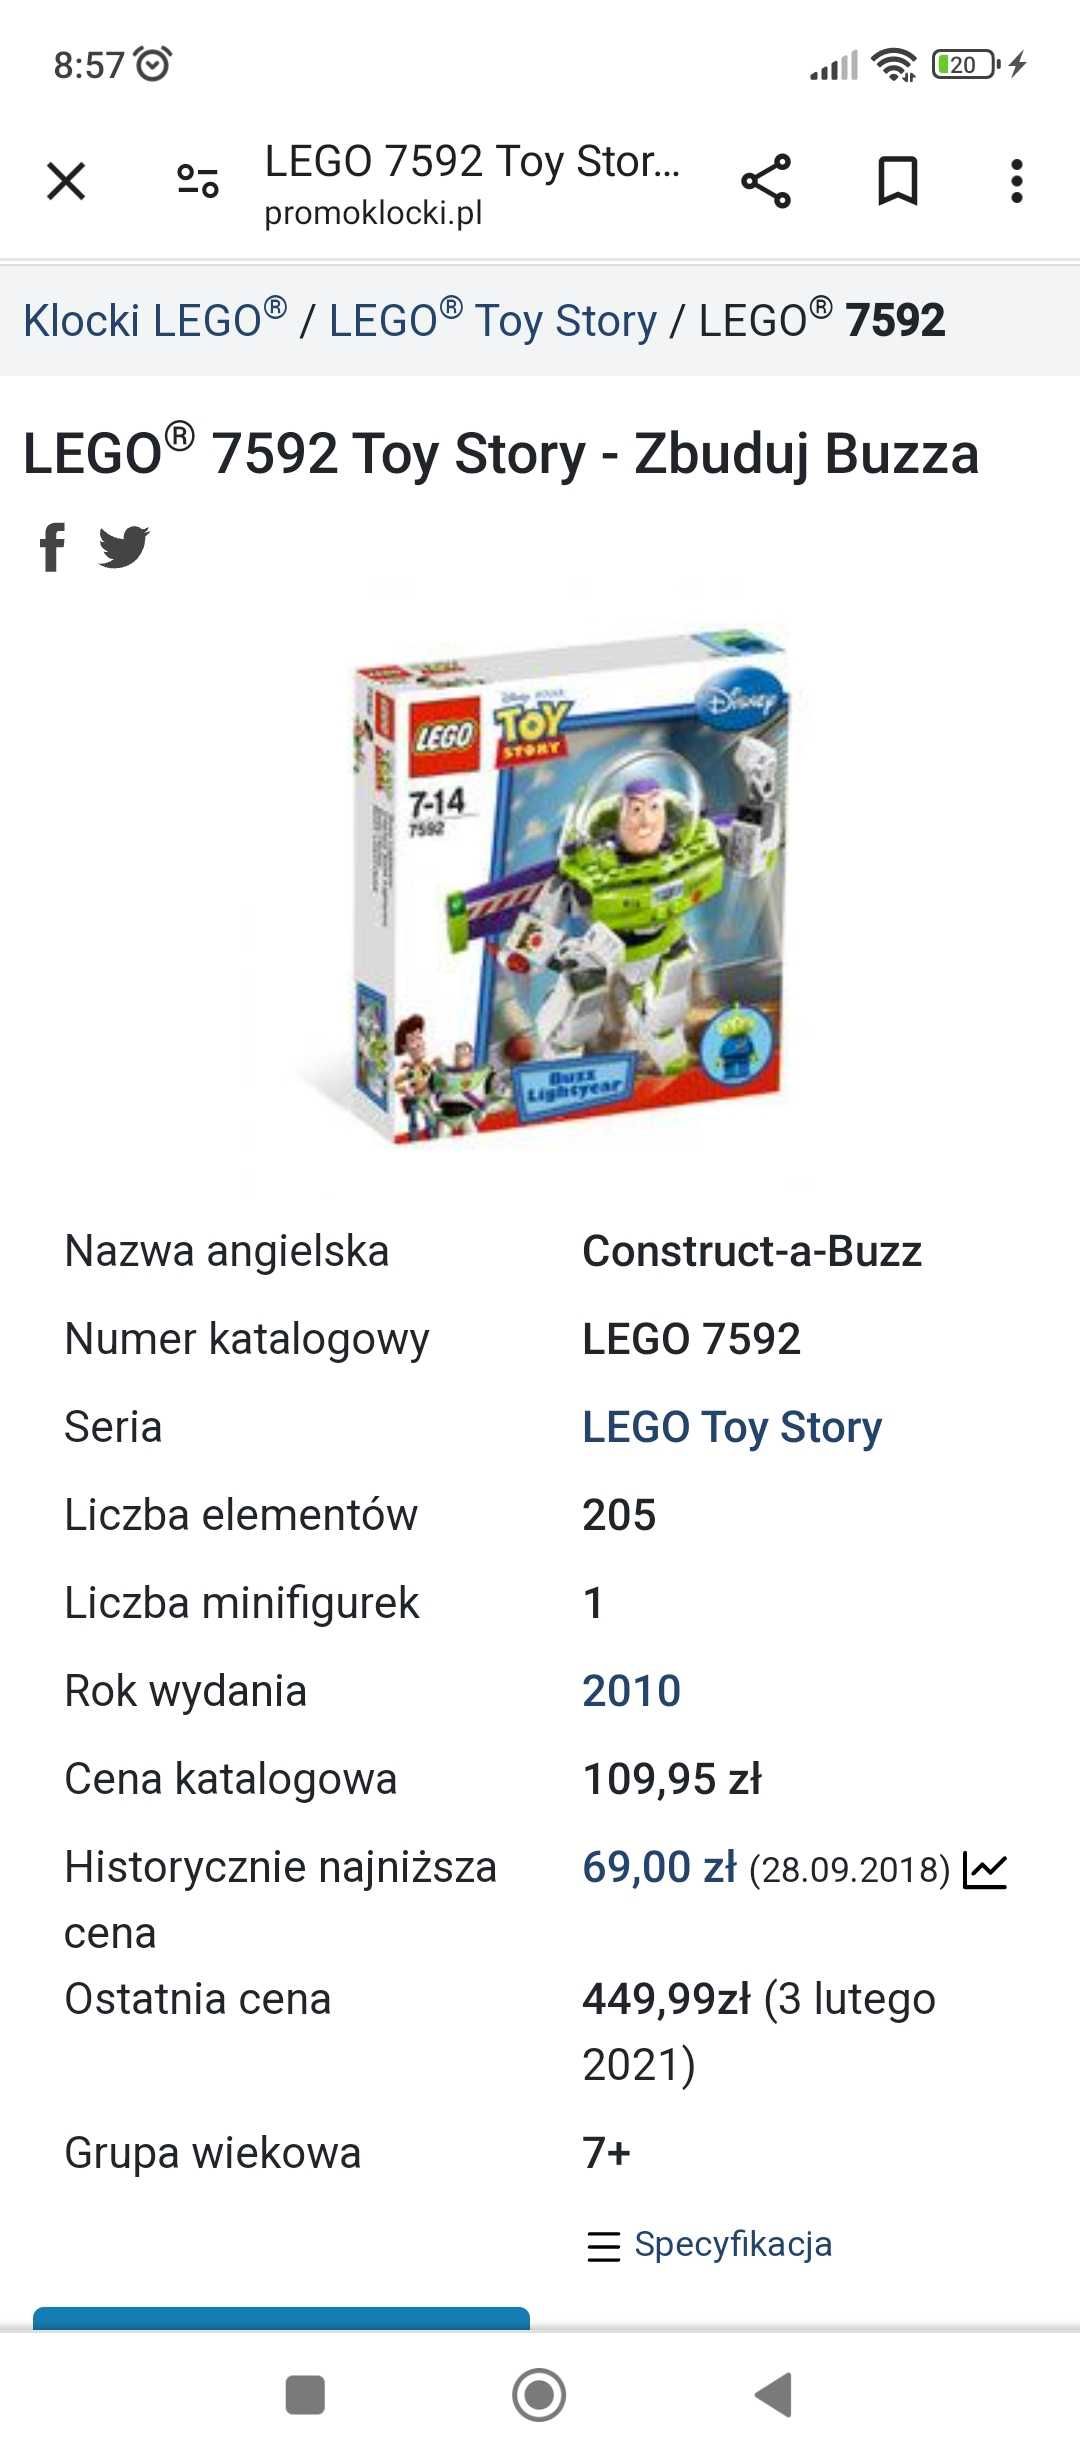 Lego buzz astral. Limitowana Zabawka kolekcjonerska. Nowa